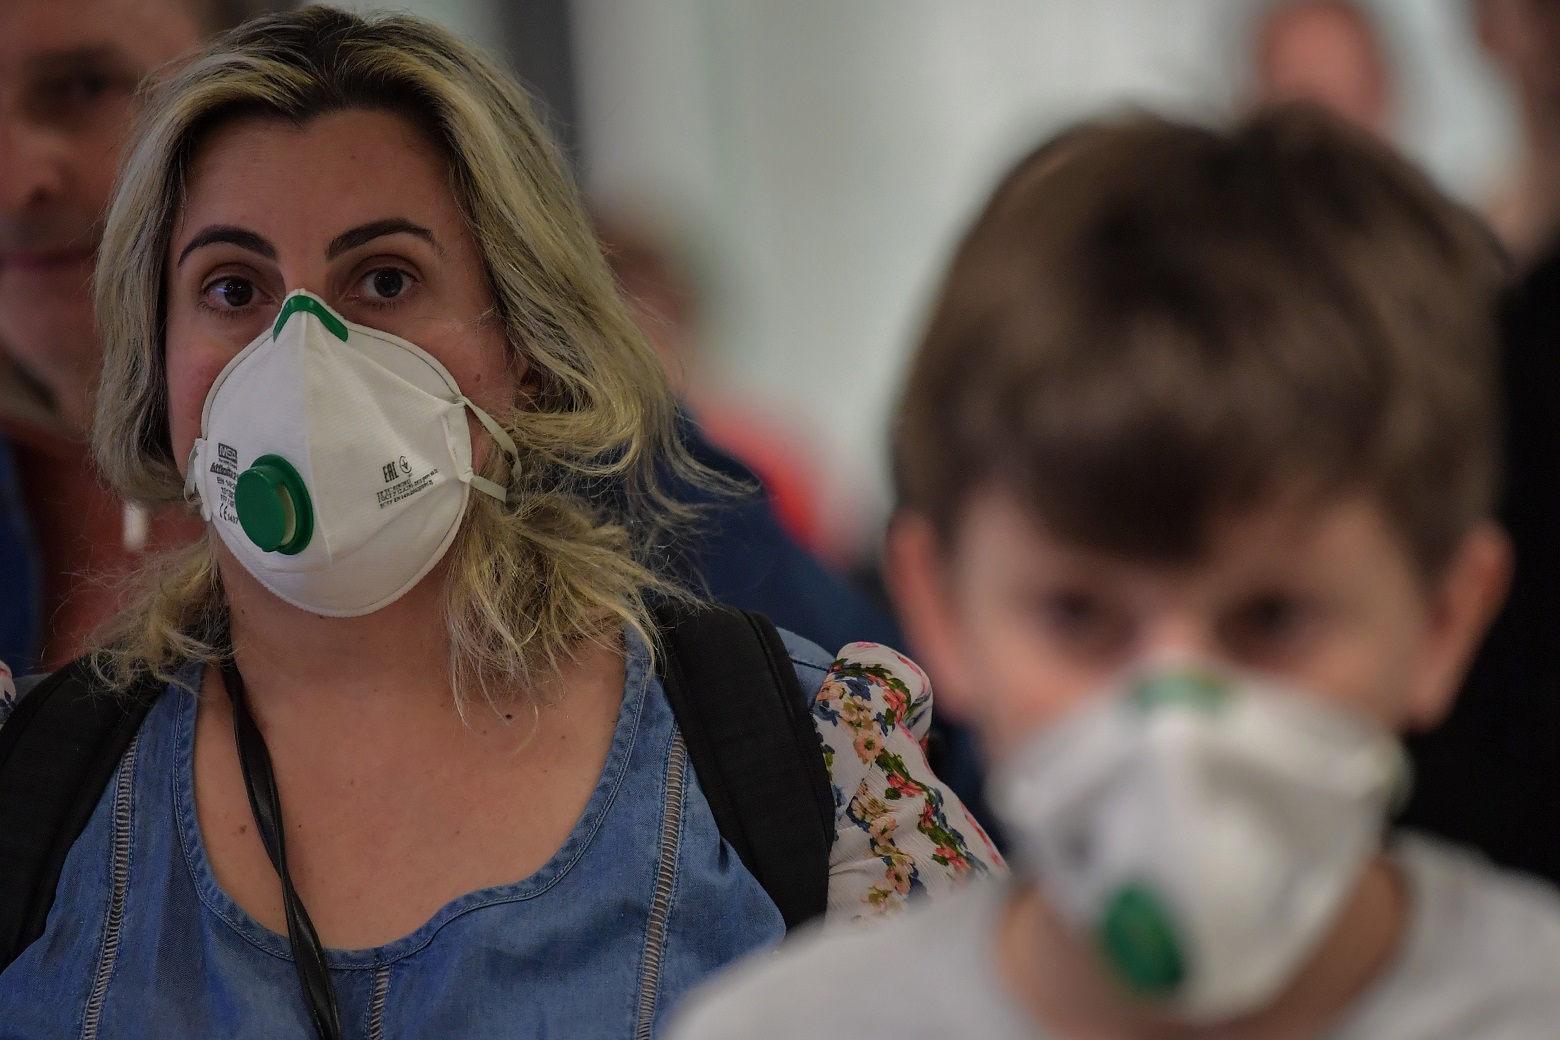 Passageiros vindo da Itália desembarcam no aeroporto de Guarulhos, em São Paulo, usando máscaras. Foto Nelson ALMEIDA / AFP)